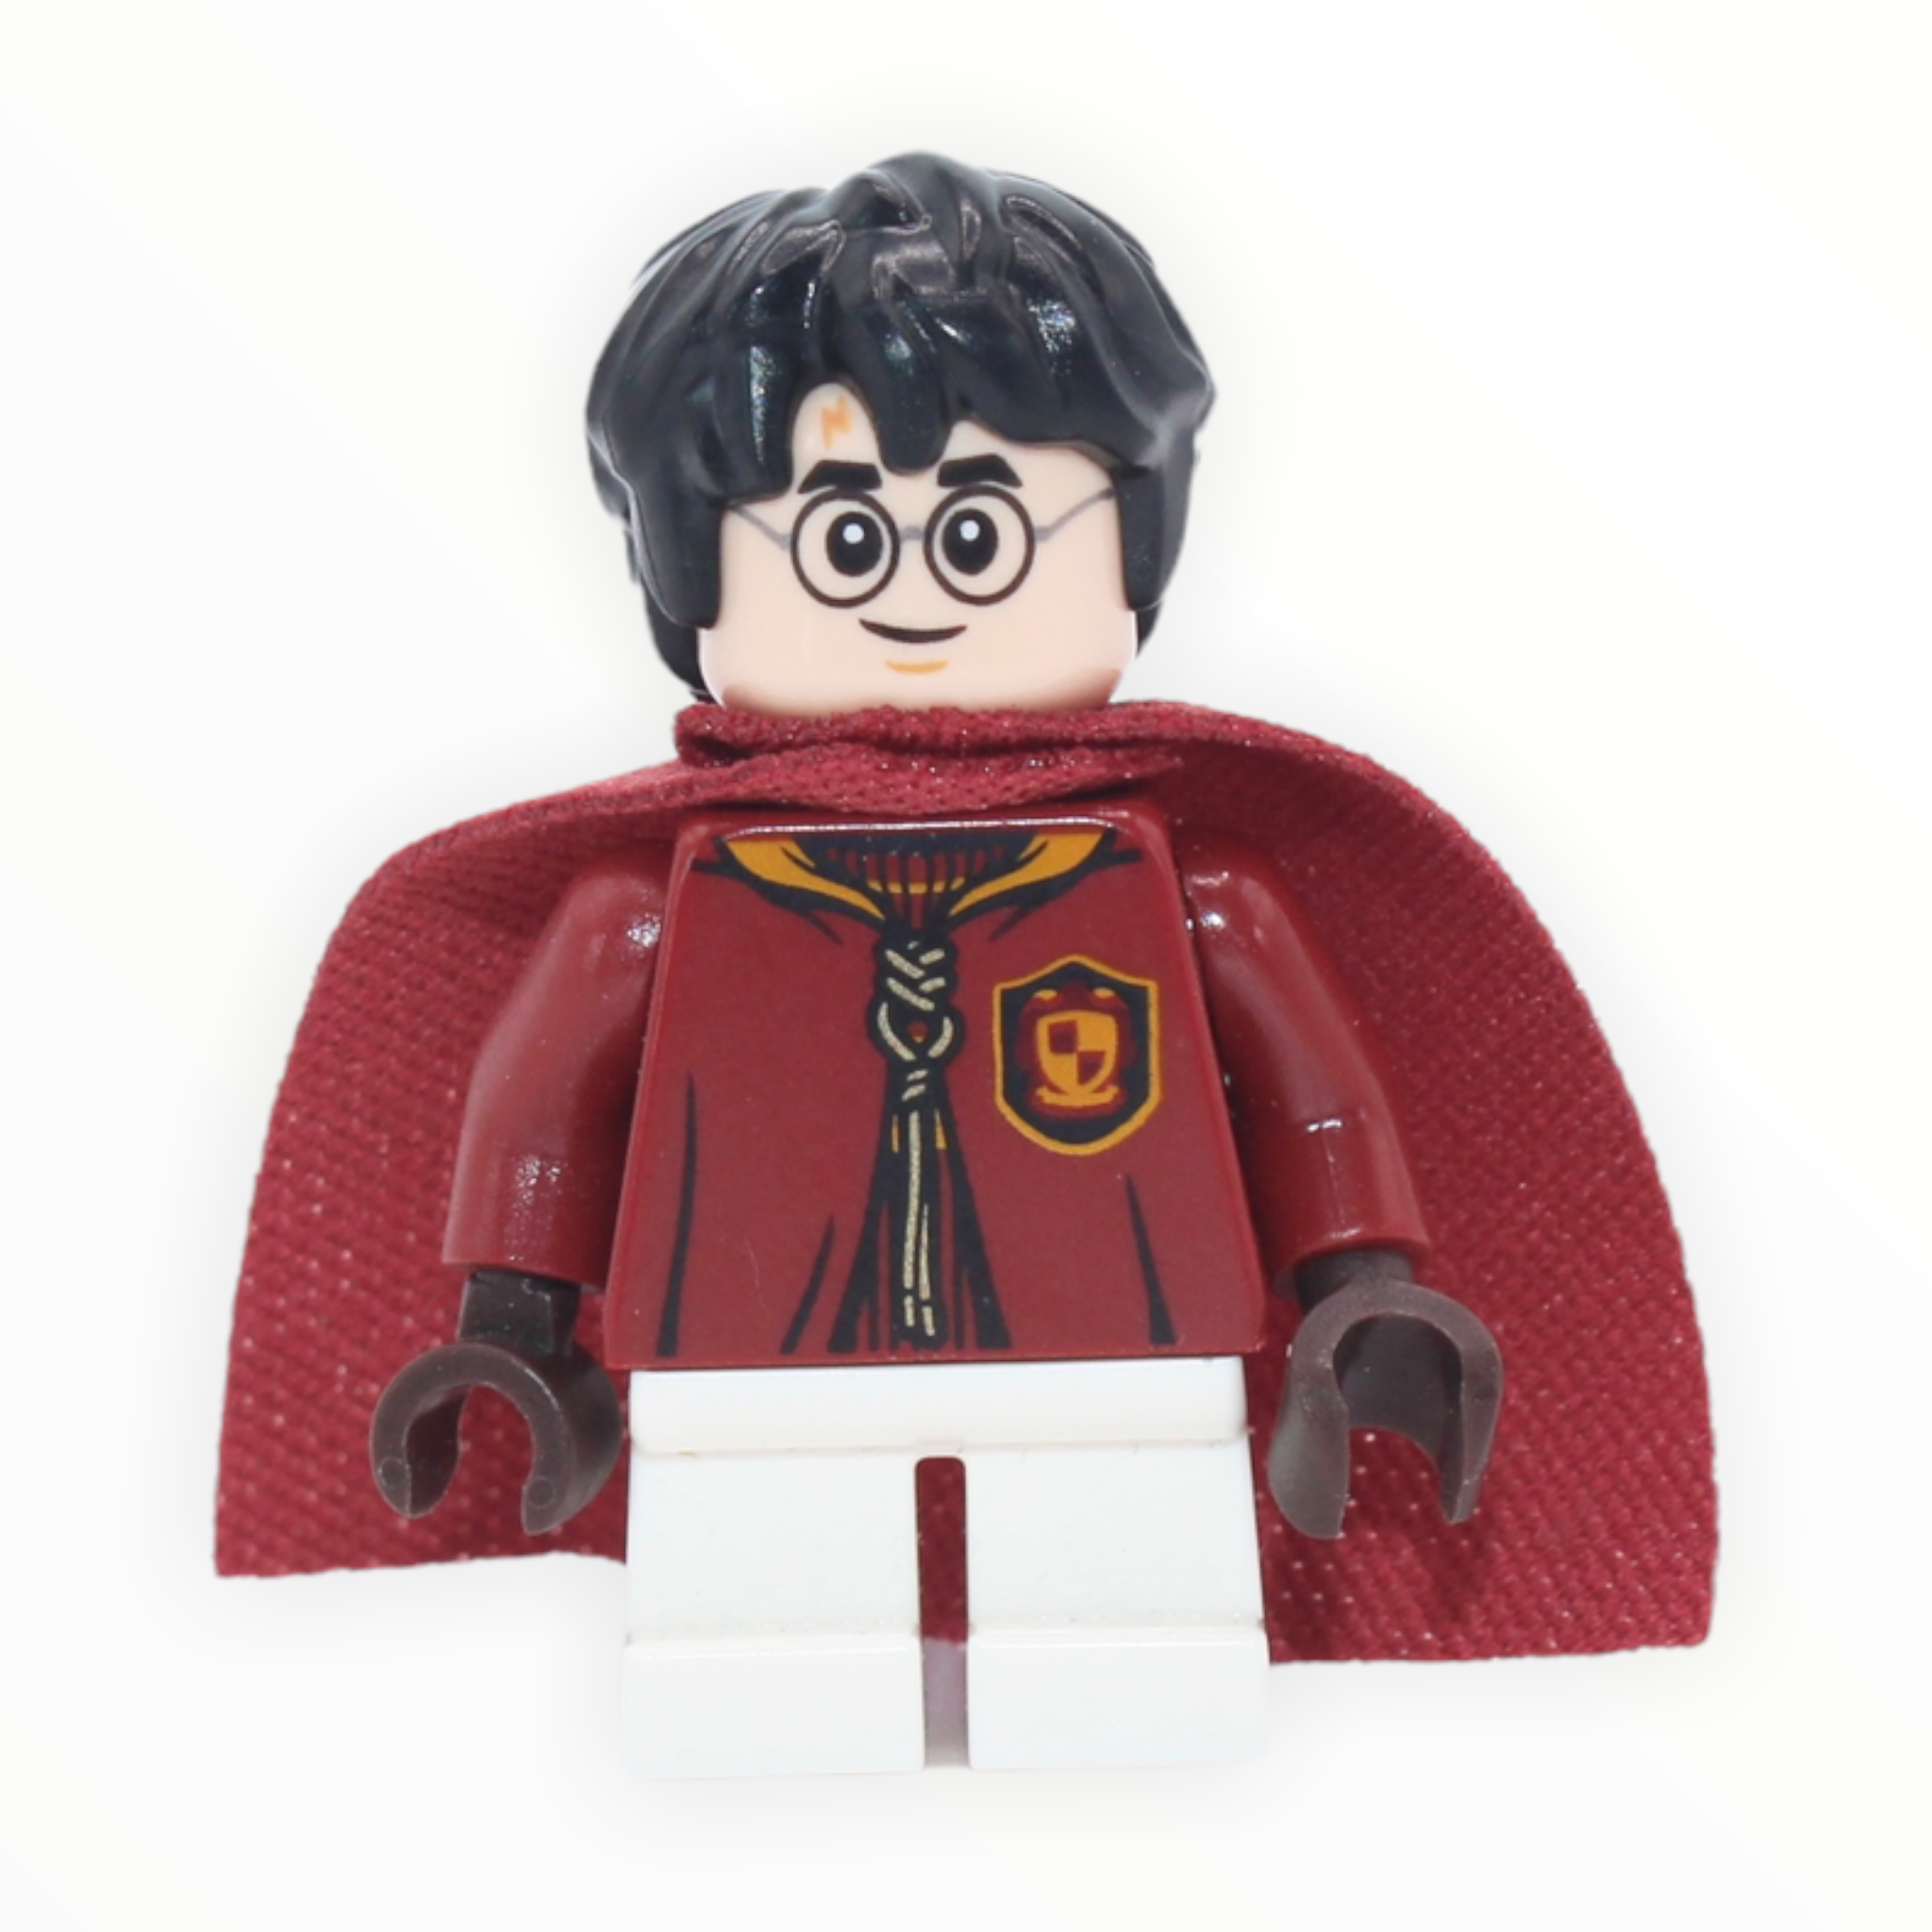 Harry Potter (Quidditch uniform, short legs, spongy cape)